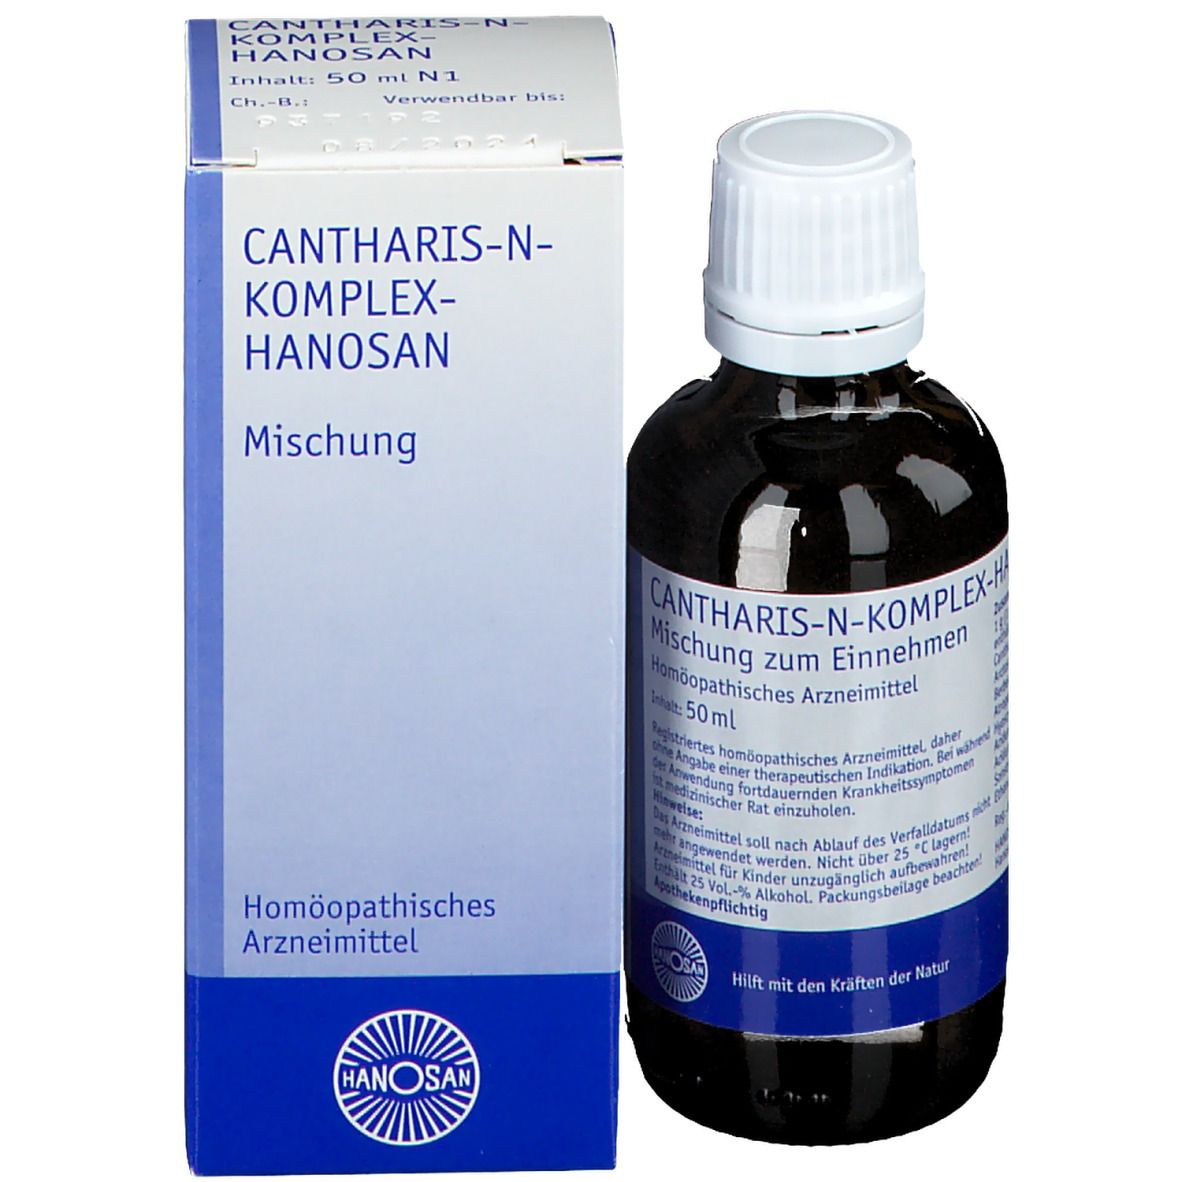 Cantharis-N-Komplex-Hanosan